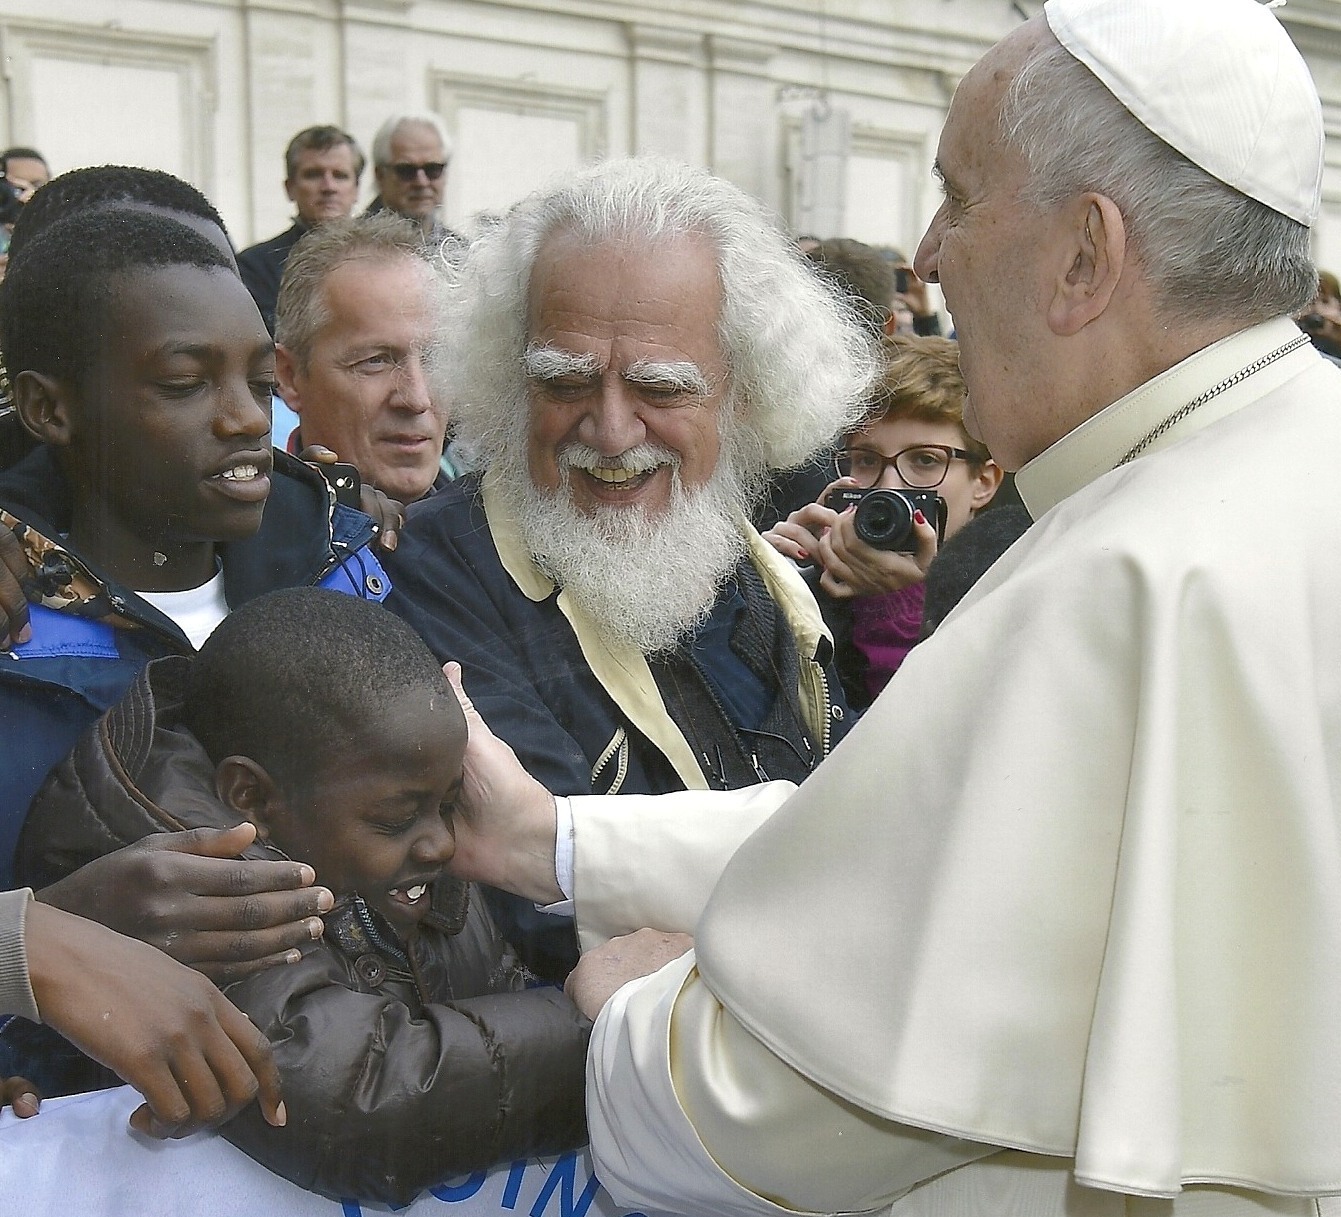 Jovens são recrutados para semear o medo em nome da religião, denuncia o Papa